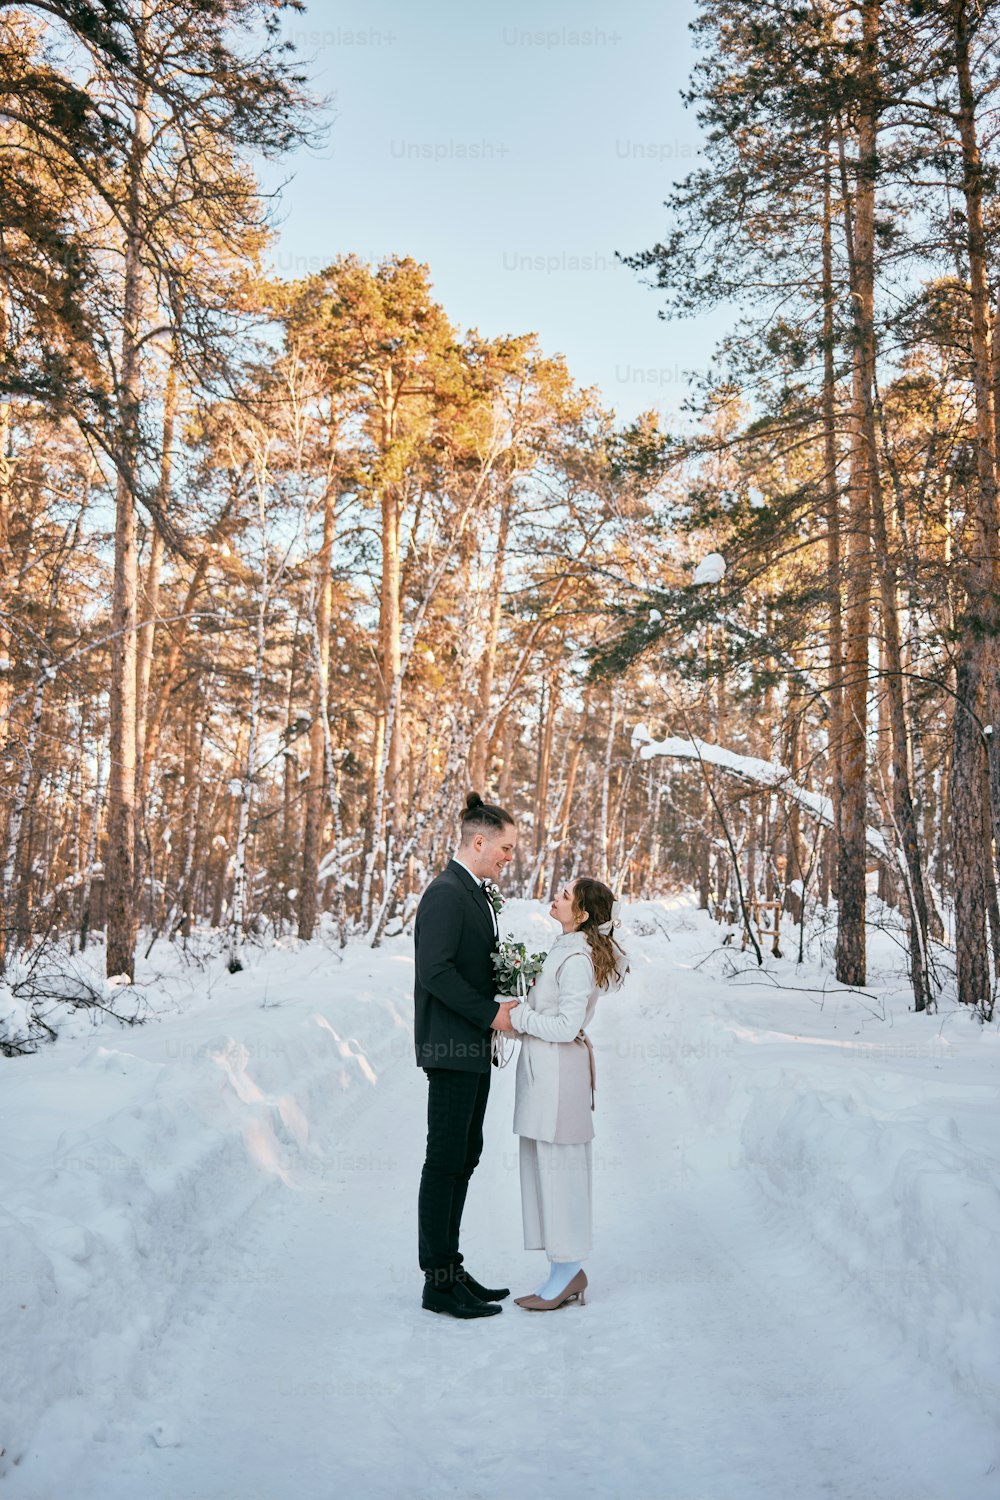 una novia y un novio de pie en la nieve